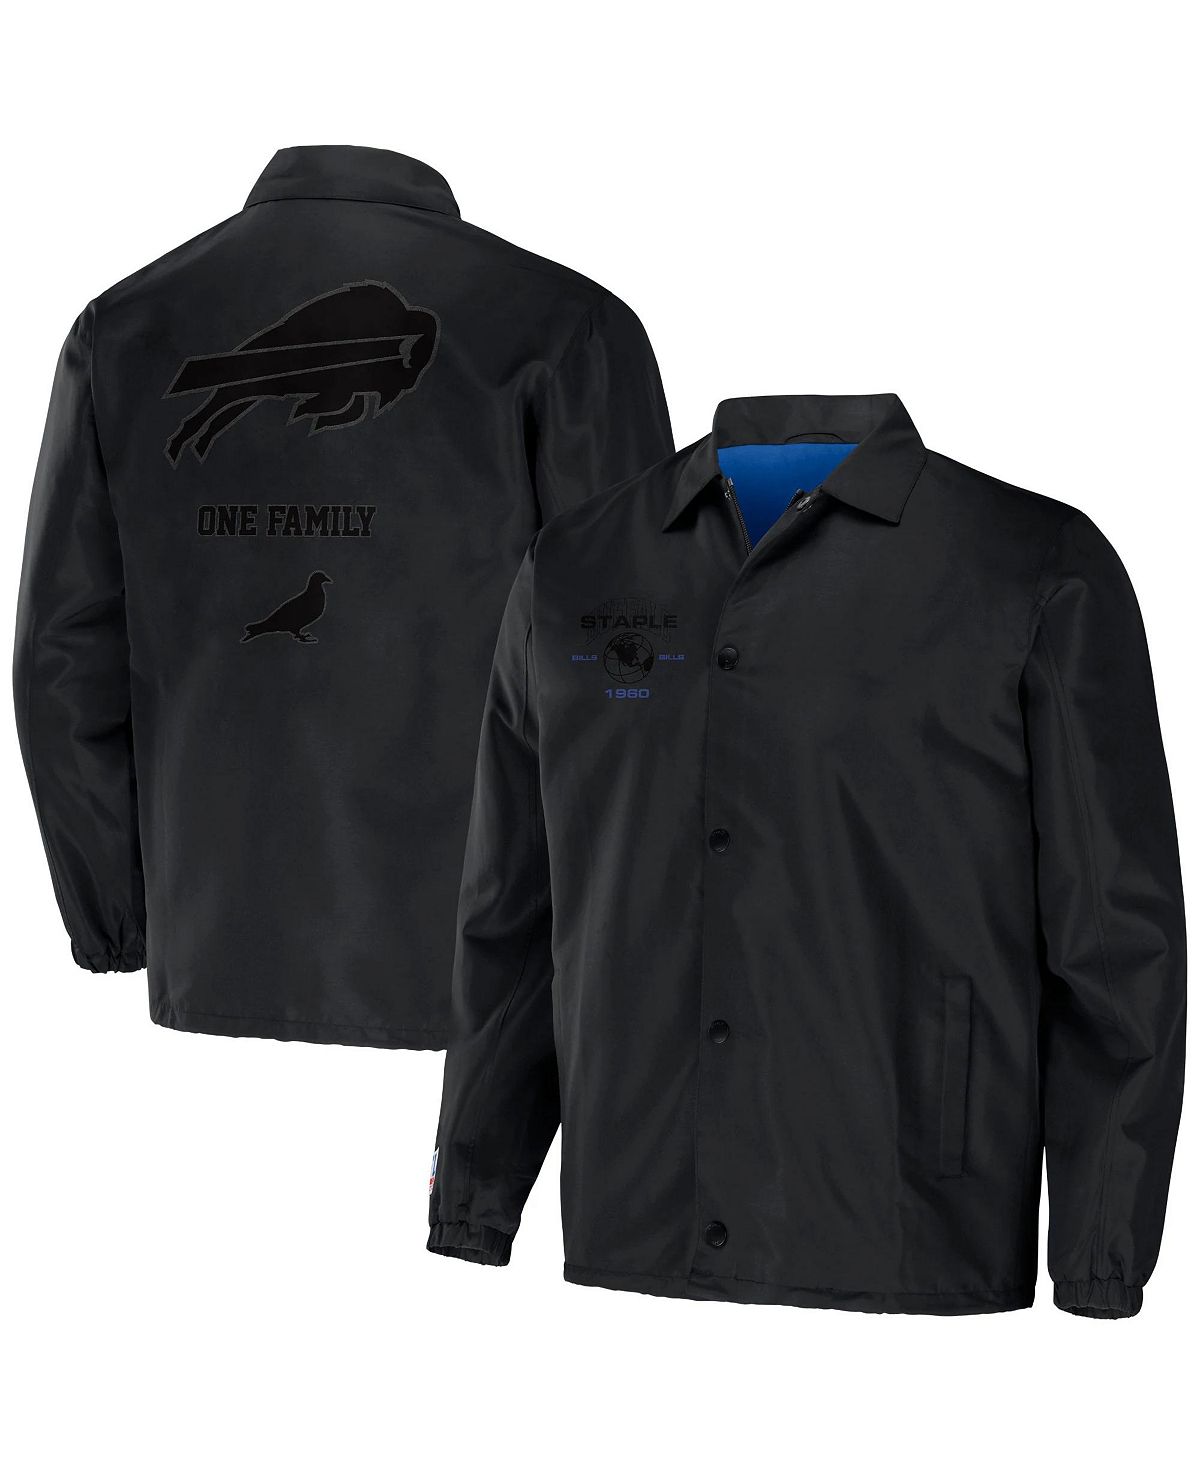 Мужская нейлоновая куртка nfl x staple из черного нейлона с вышивкой buffalo bills NFL Properties, черный